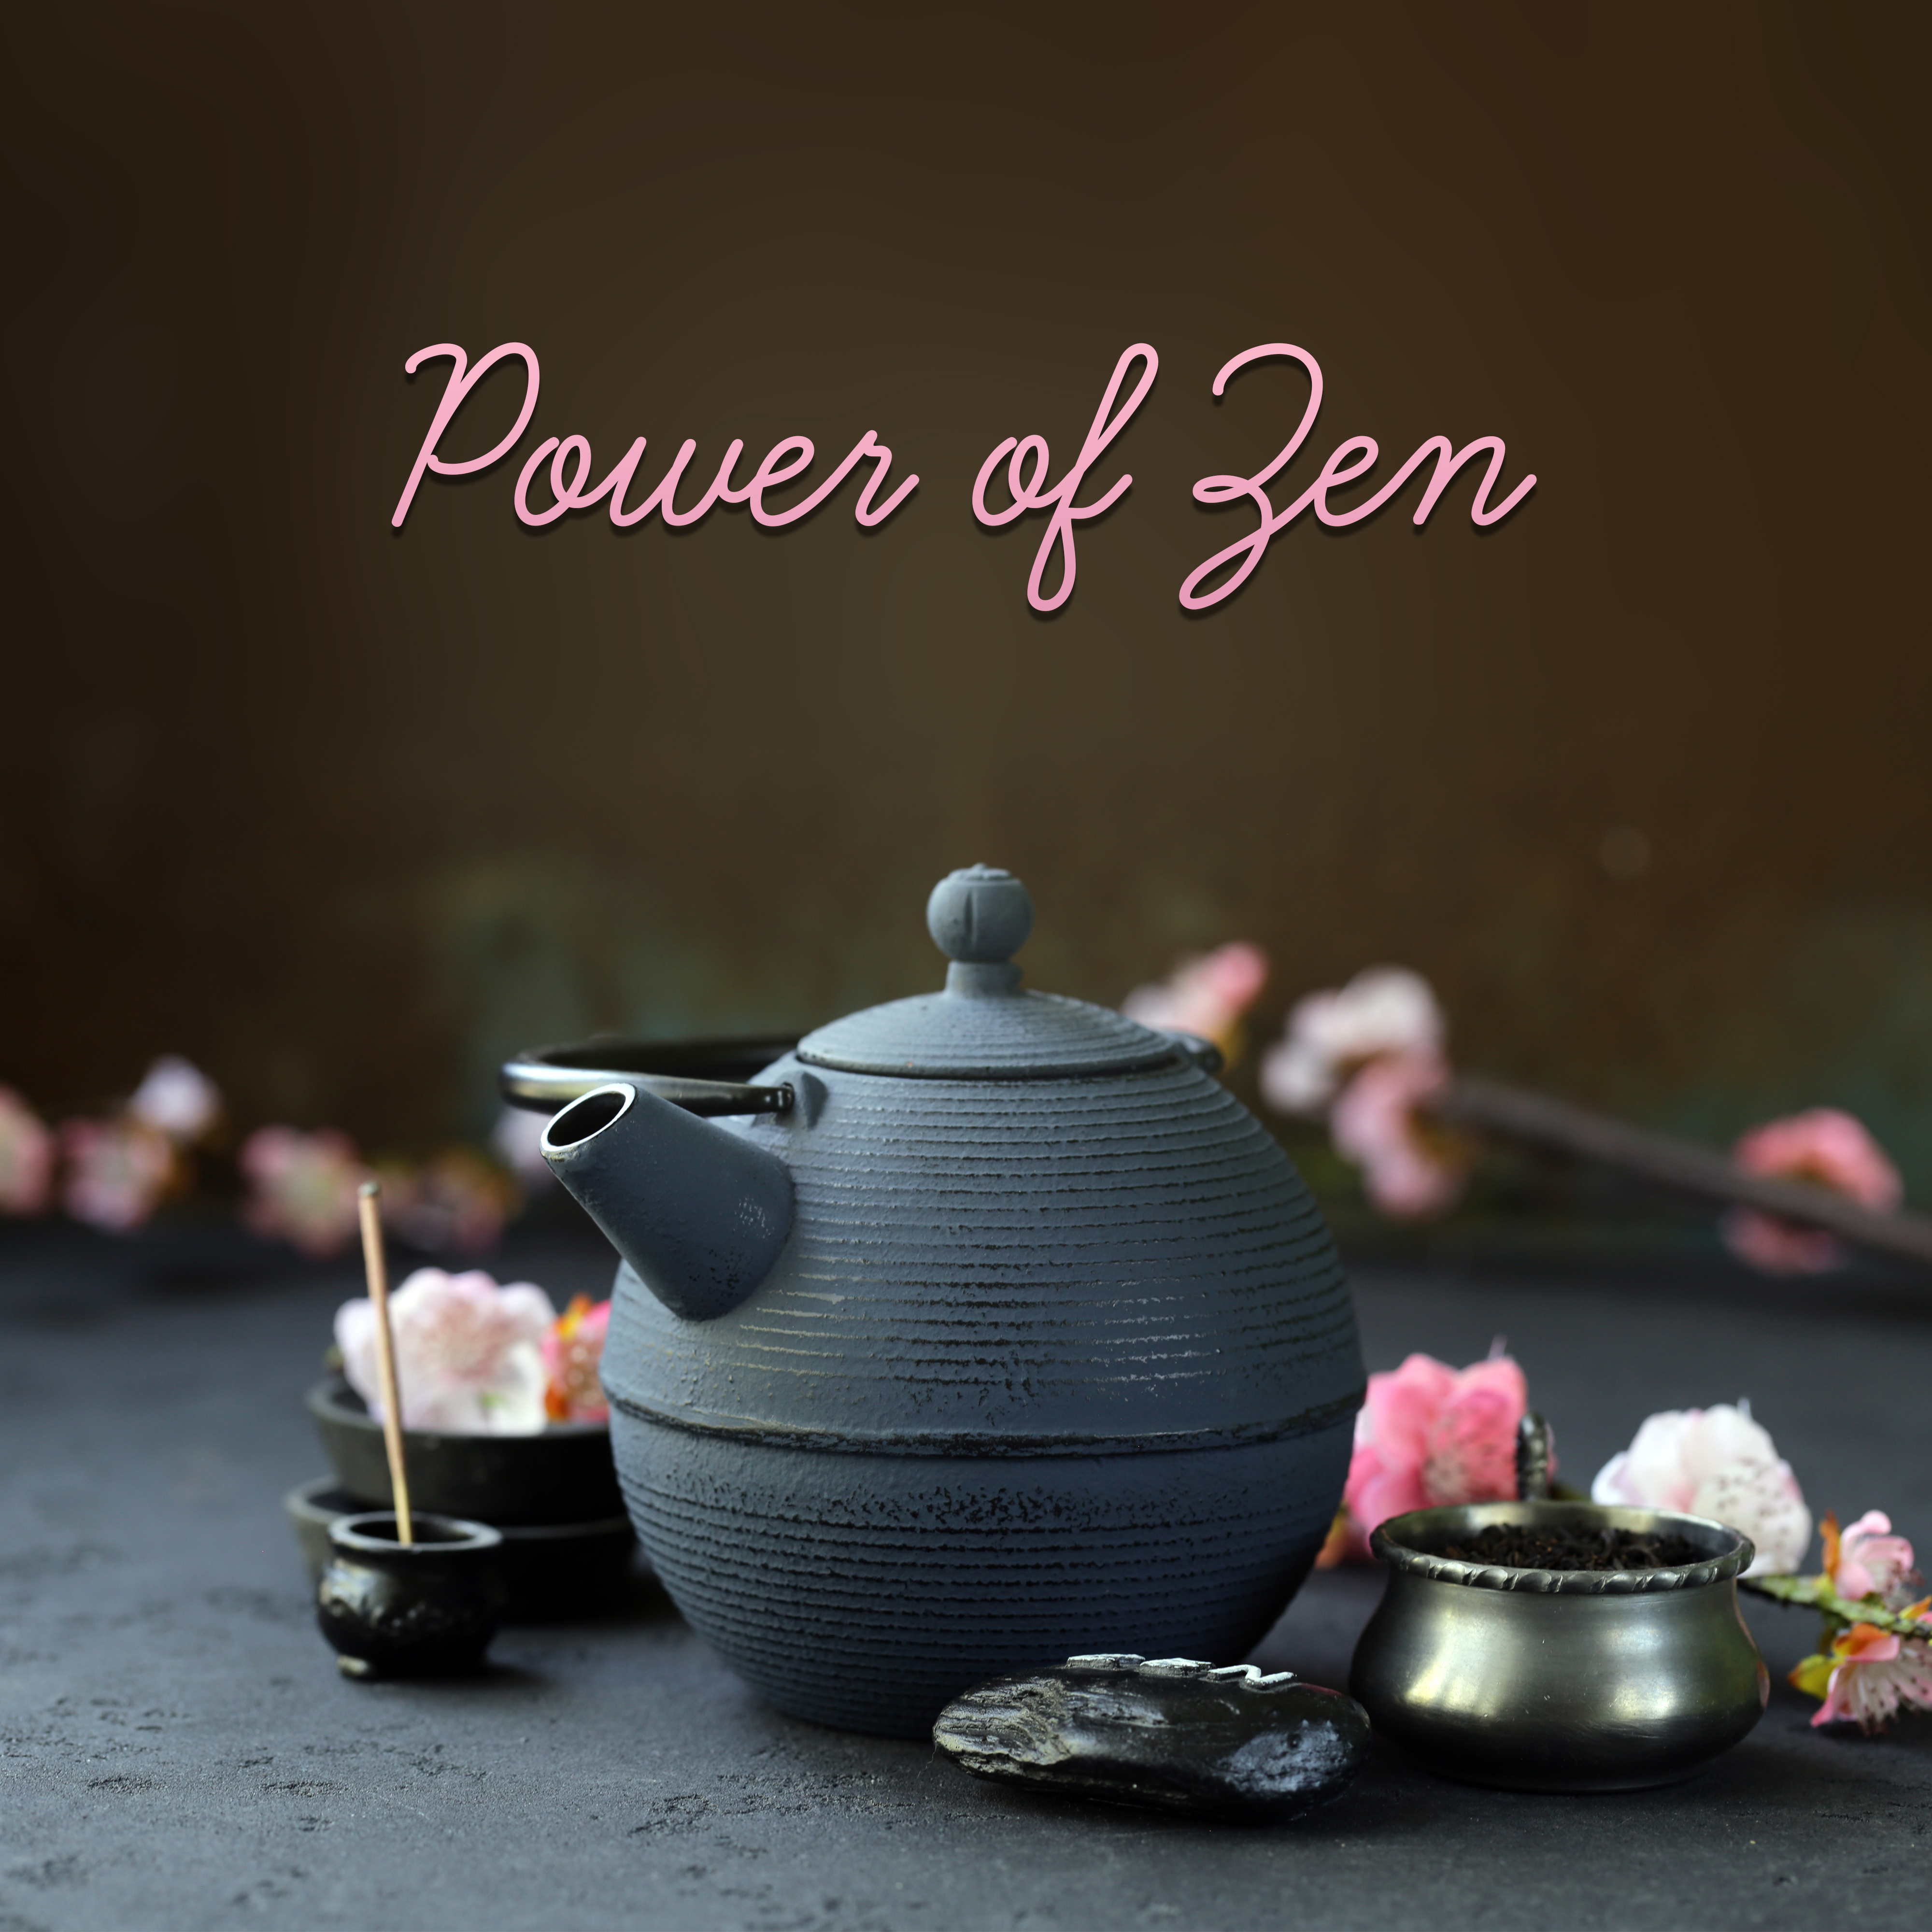 Power of Zen